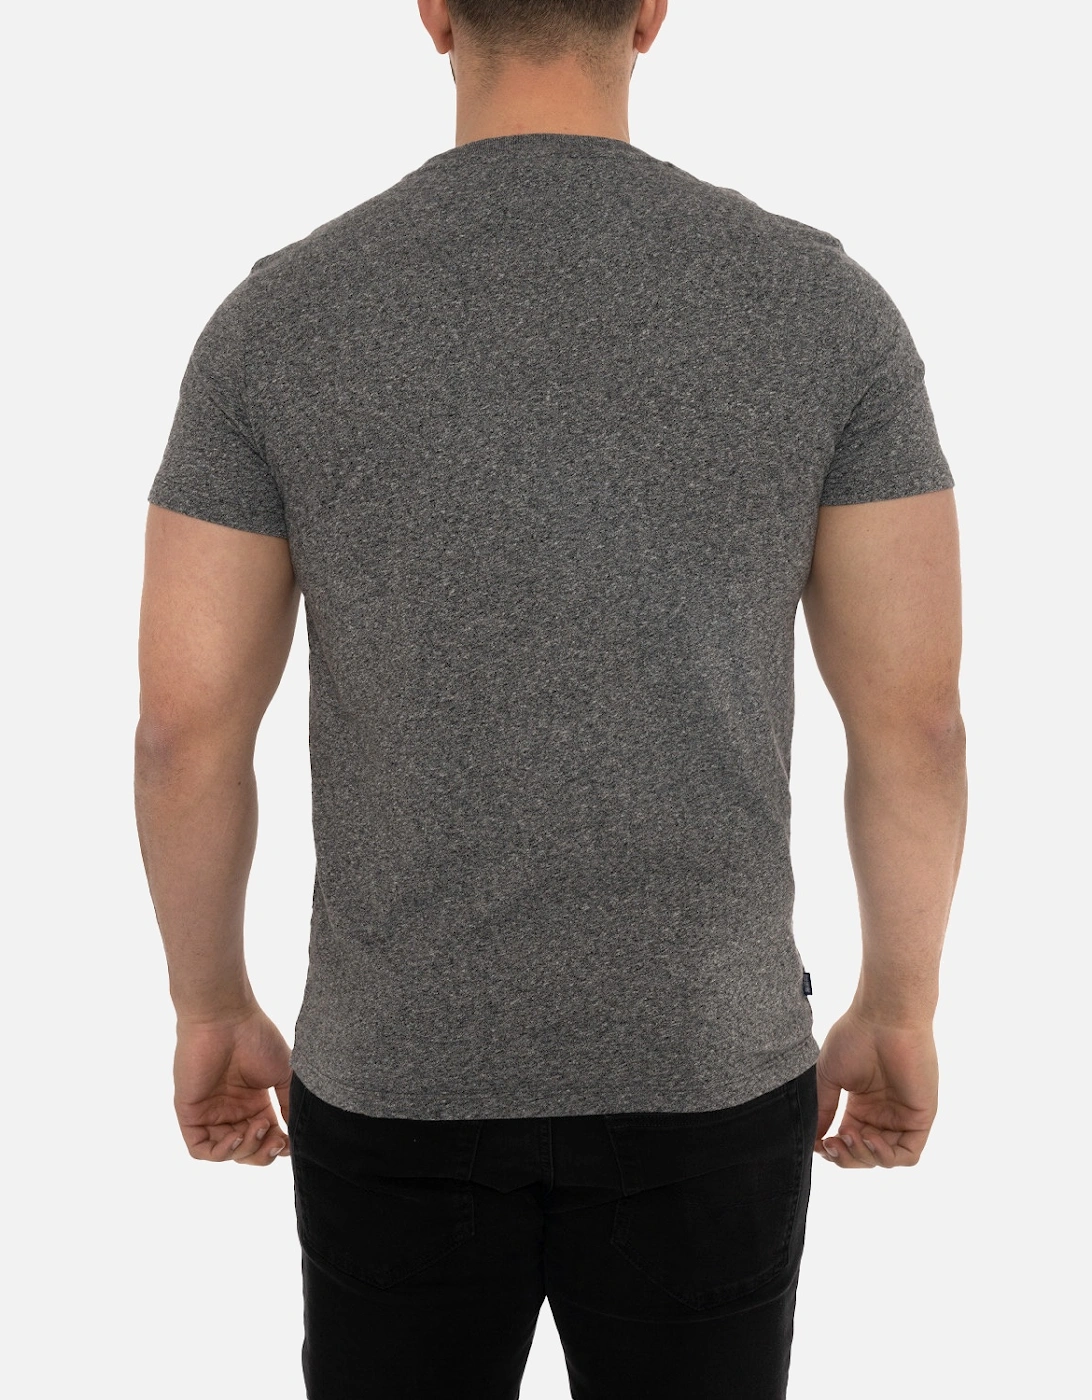 Mens Vintage Embroidered Logo T-Shirt (Black/Grey)